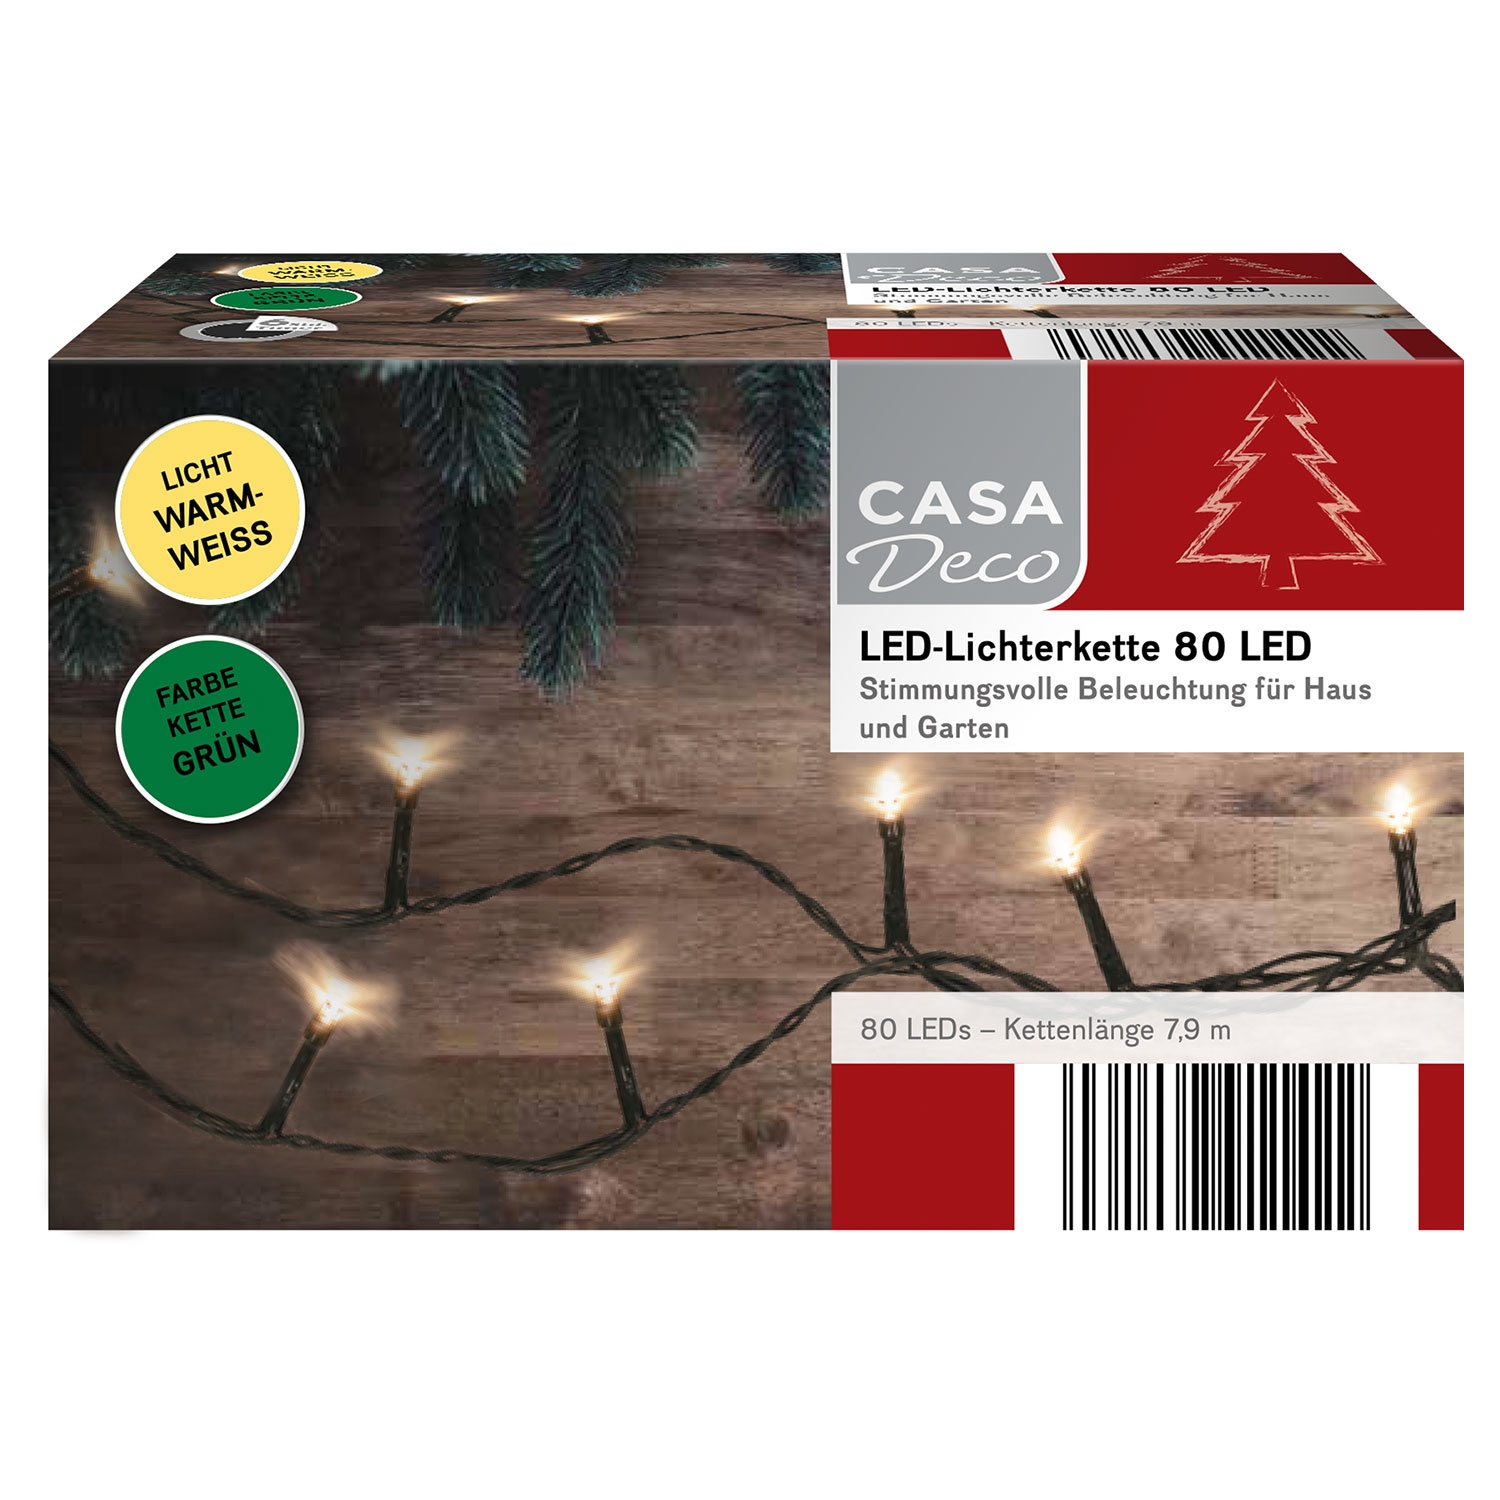 CASA DECO LED-Lichterkette mit 80 LEDs